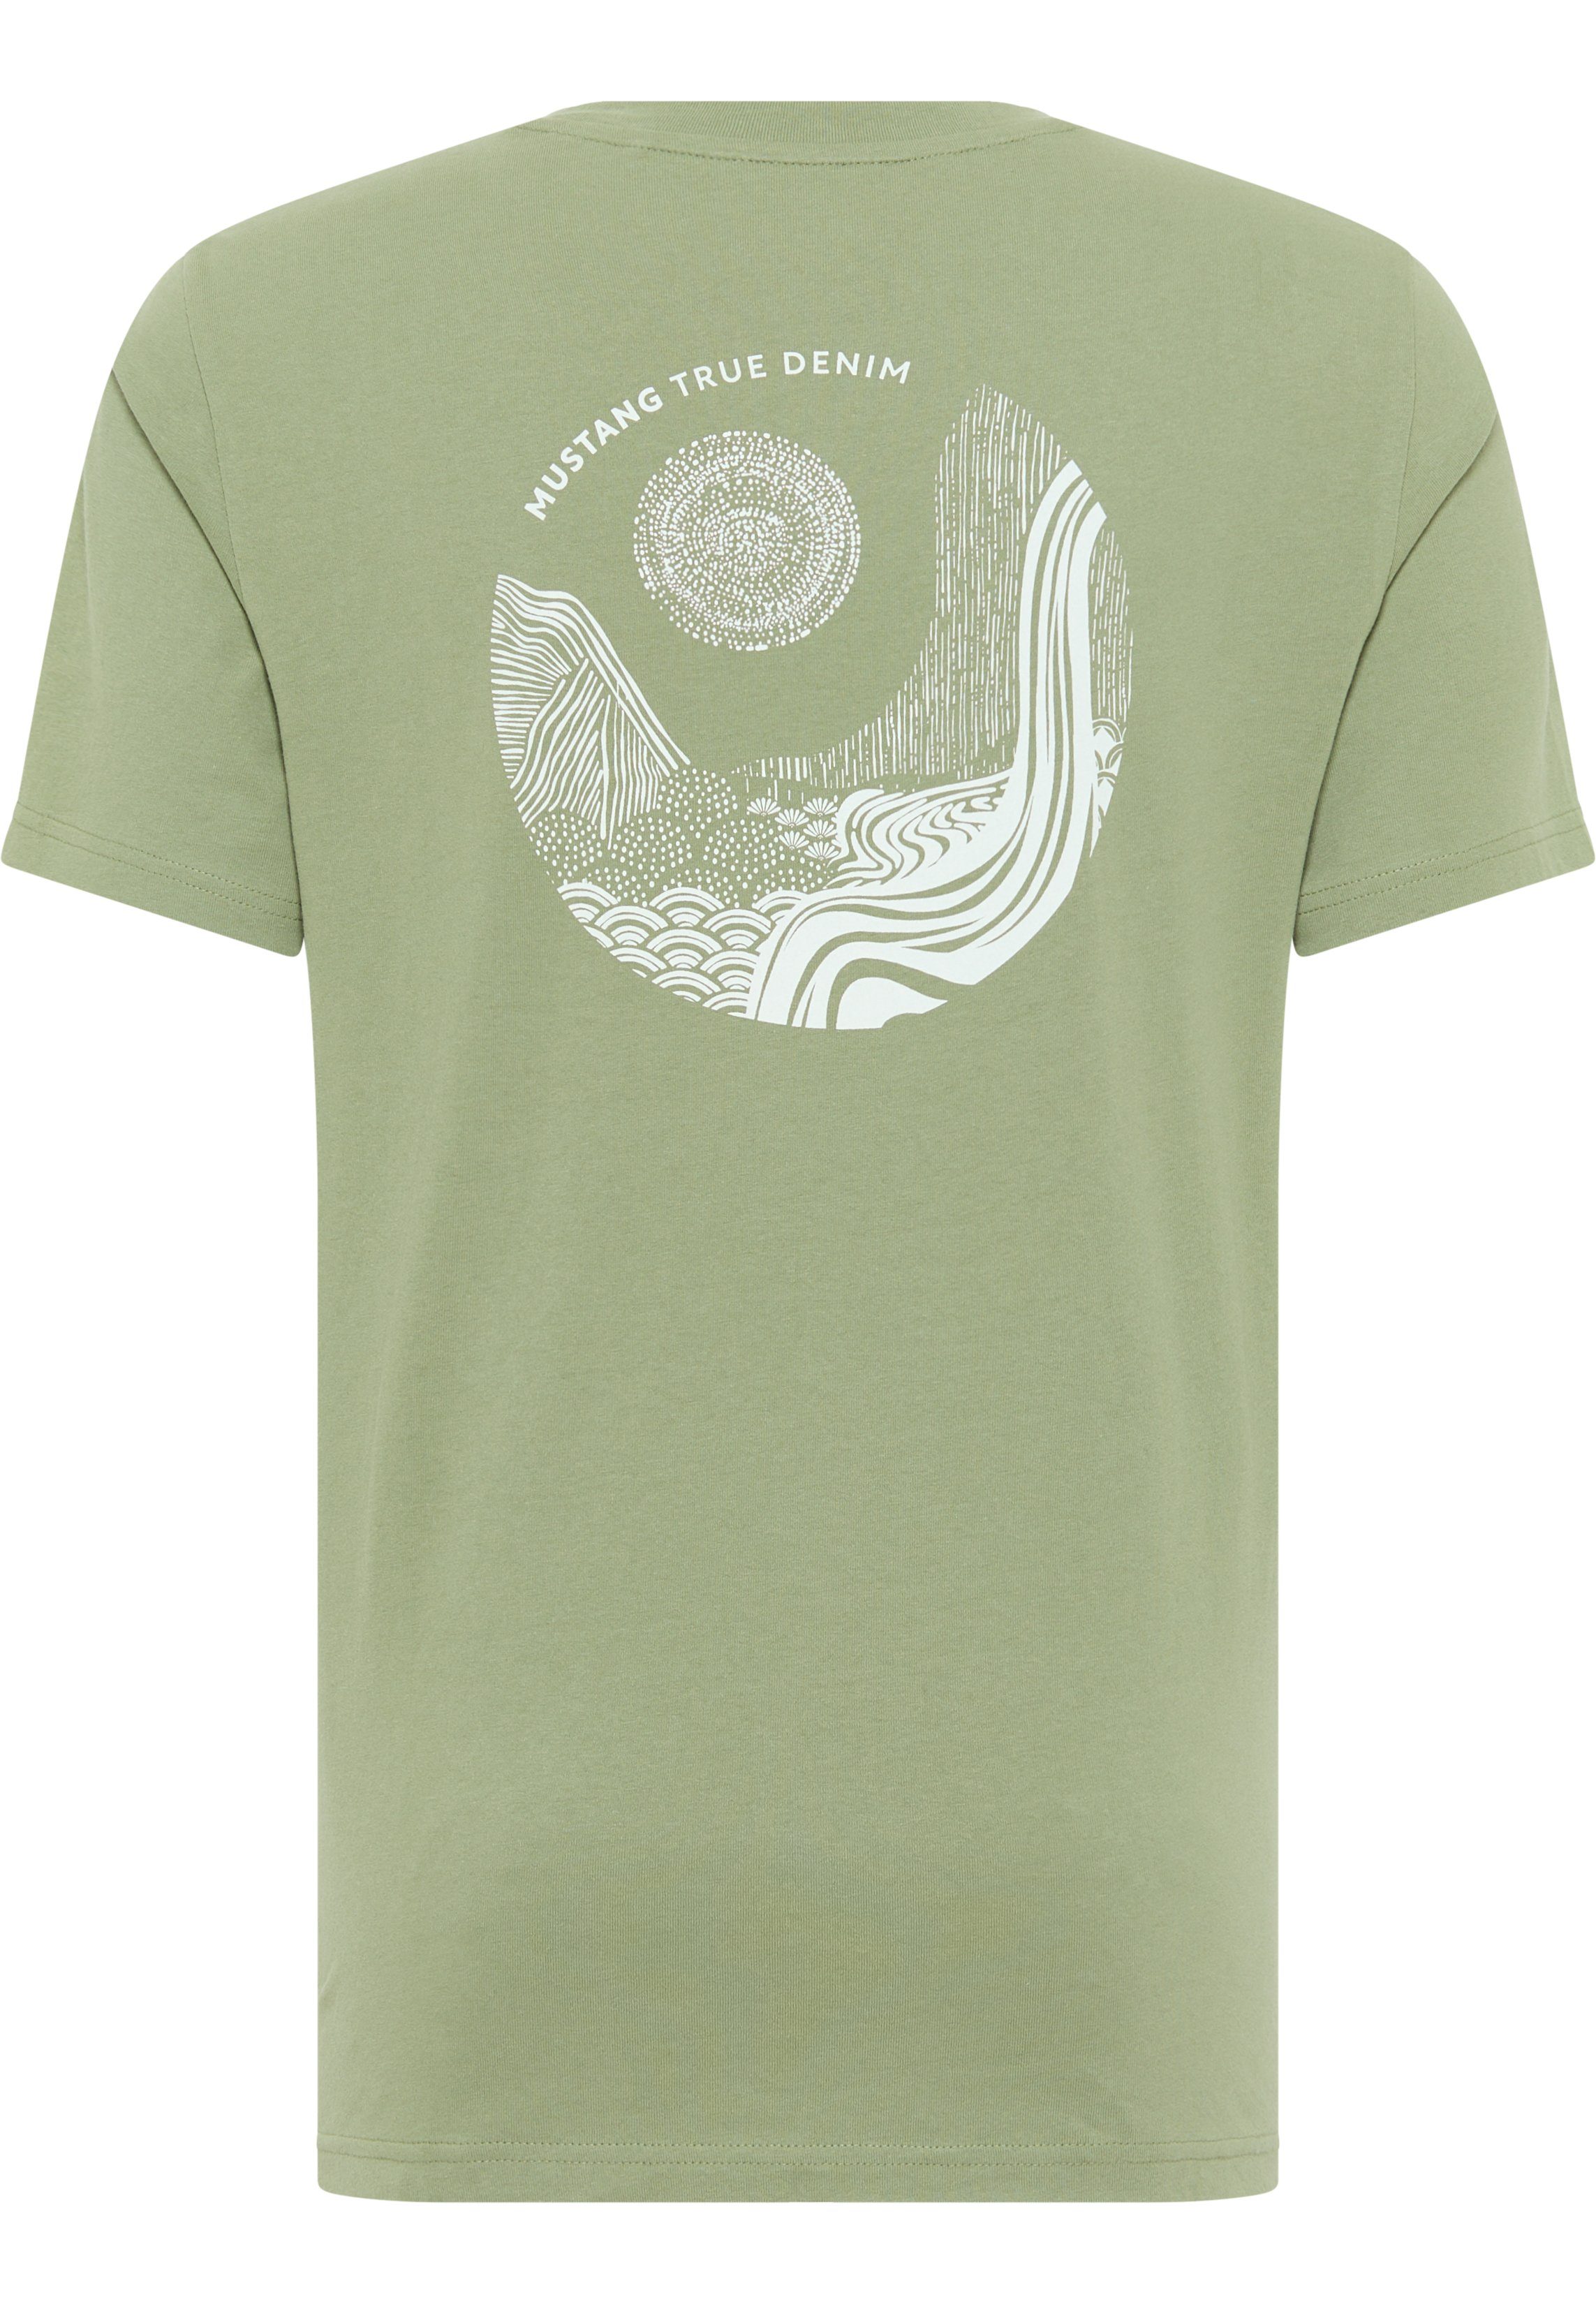 Print C T-Shirt MUSTANG Style grün Alex